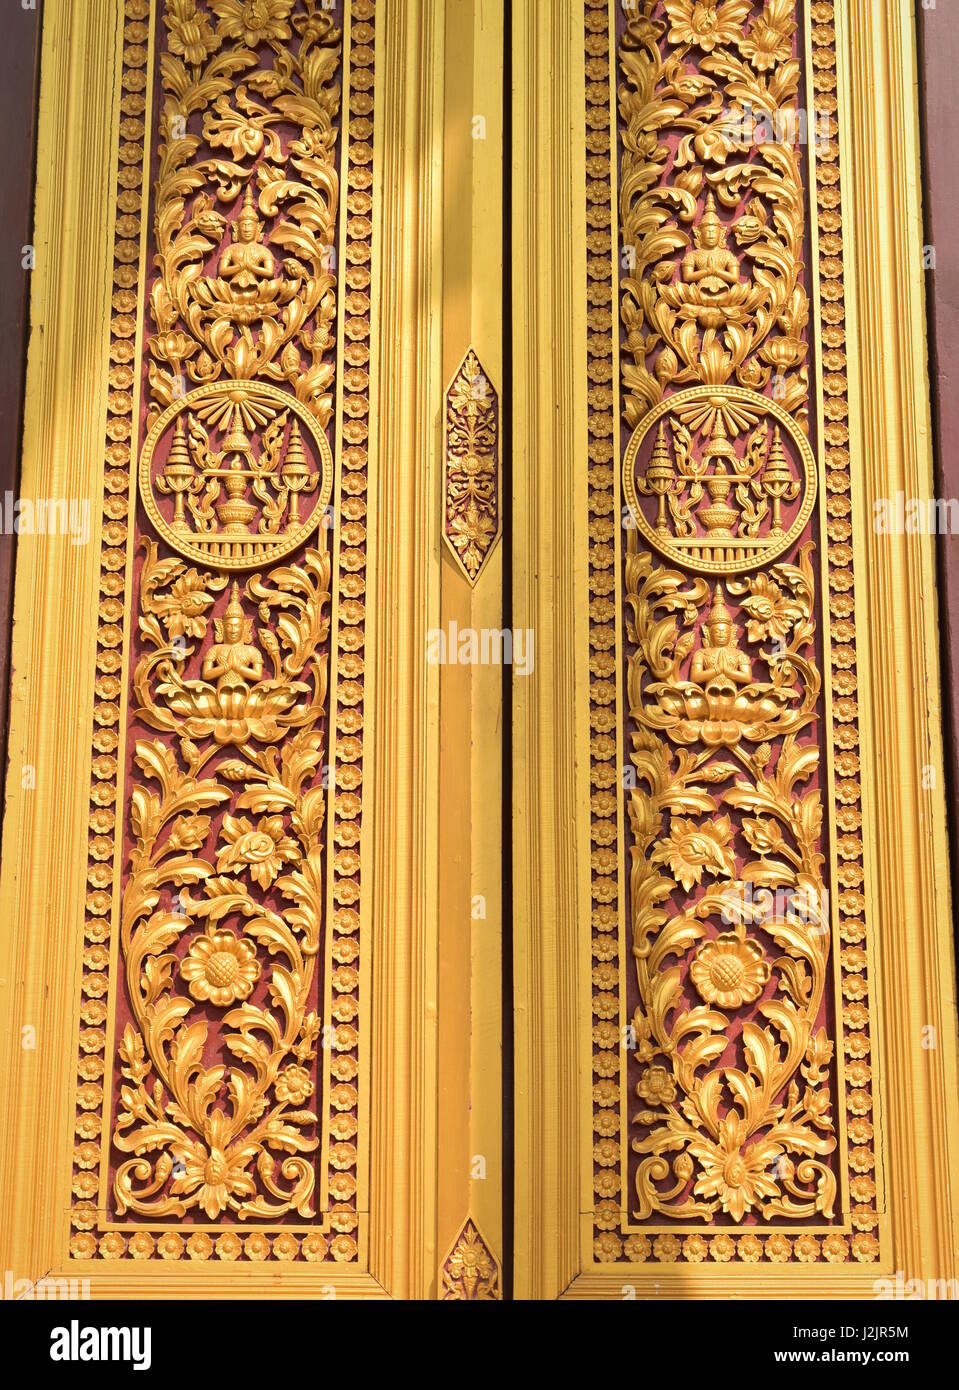 Porte d'or de Royal Palace Phnom Penh, Cambodge - fermé Banque D'Images